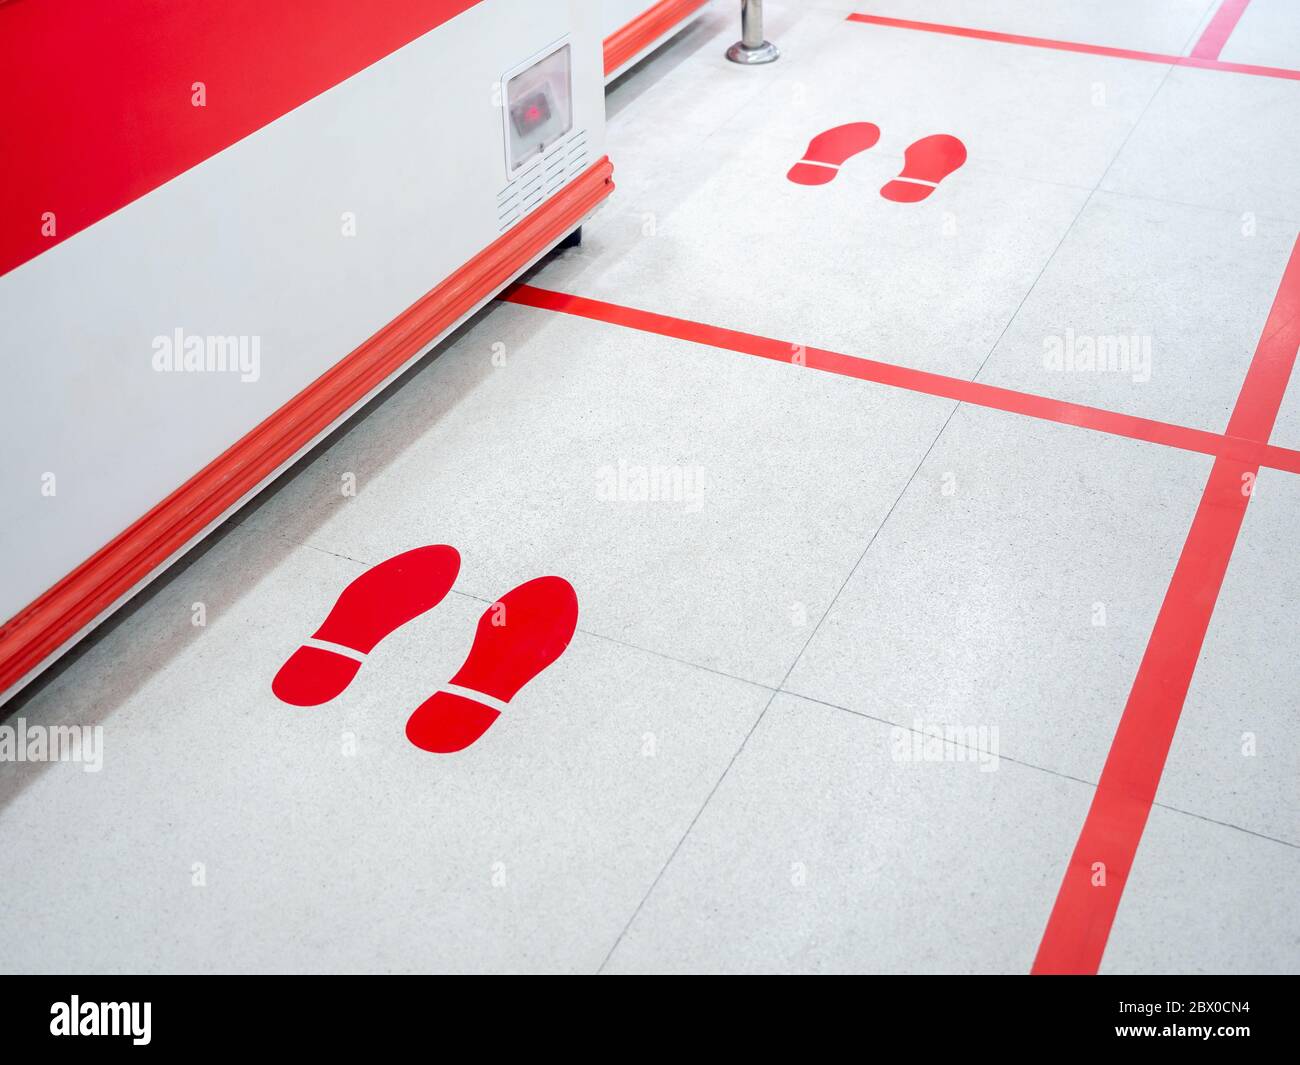 Empreinte rouge et ligne rouge au sol dans le supermarché pour l'avertissement pour garder une distance sociale sûre à protéger contre le coronavirus, concept de distance sociale. Banque D'Images